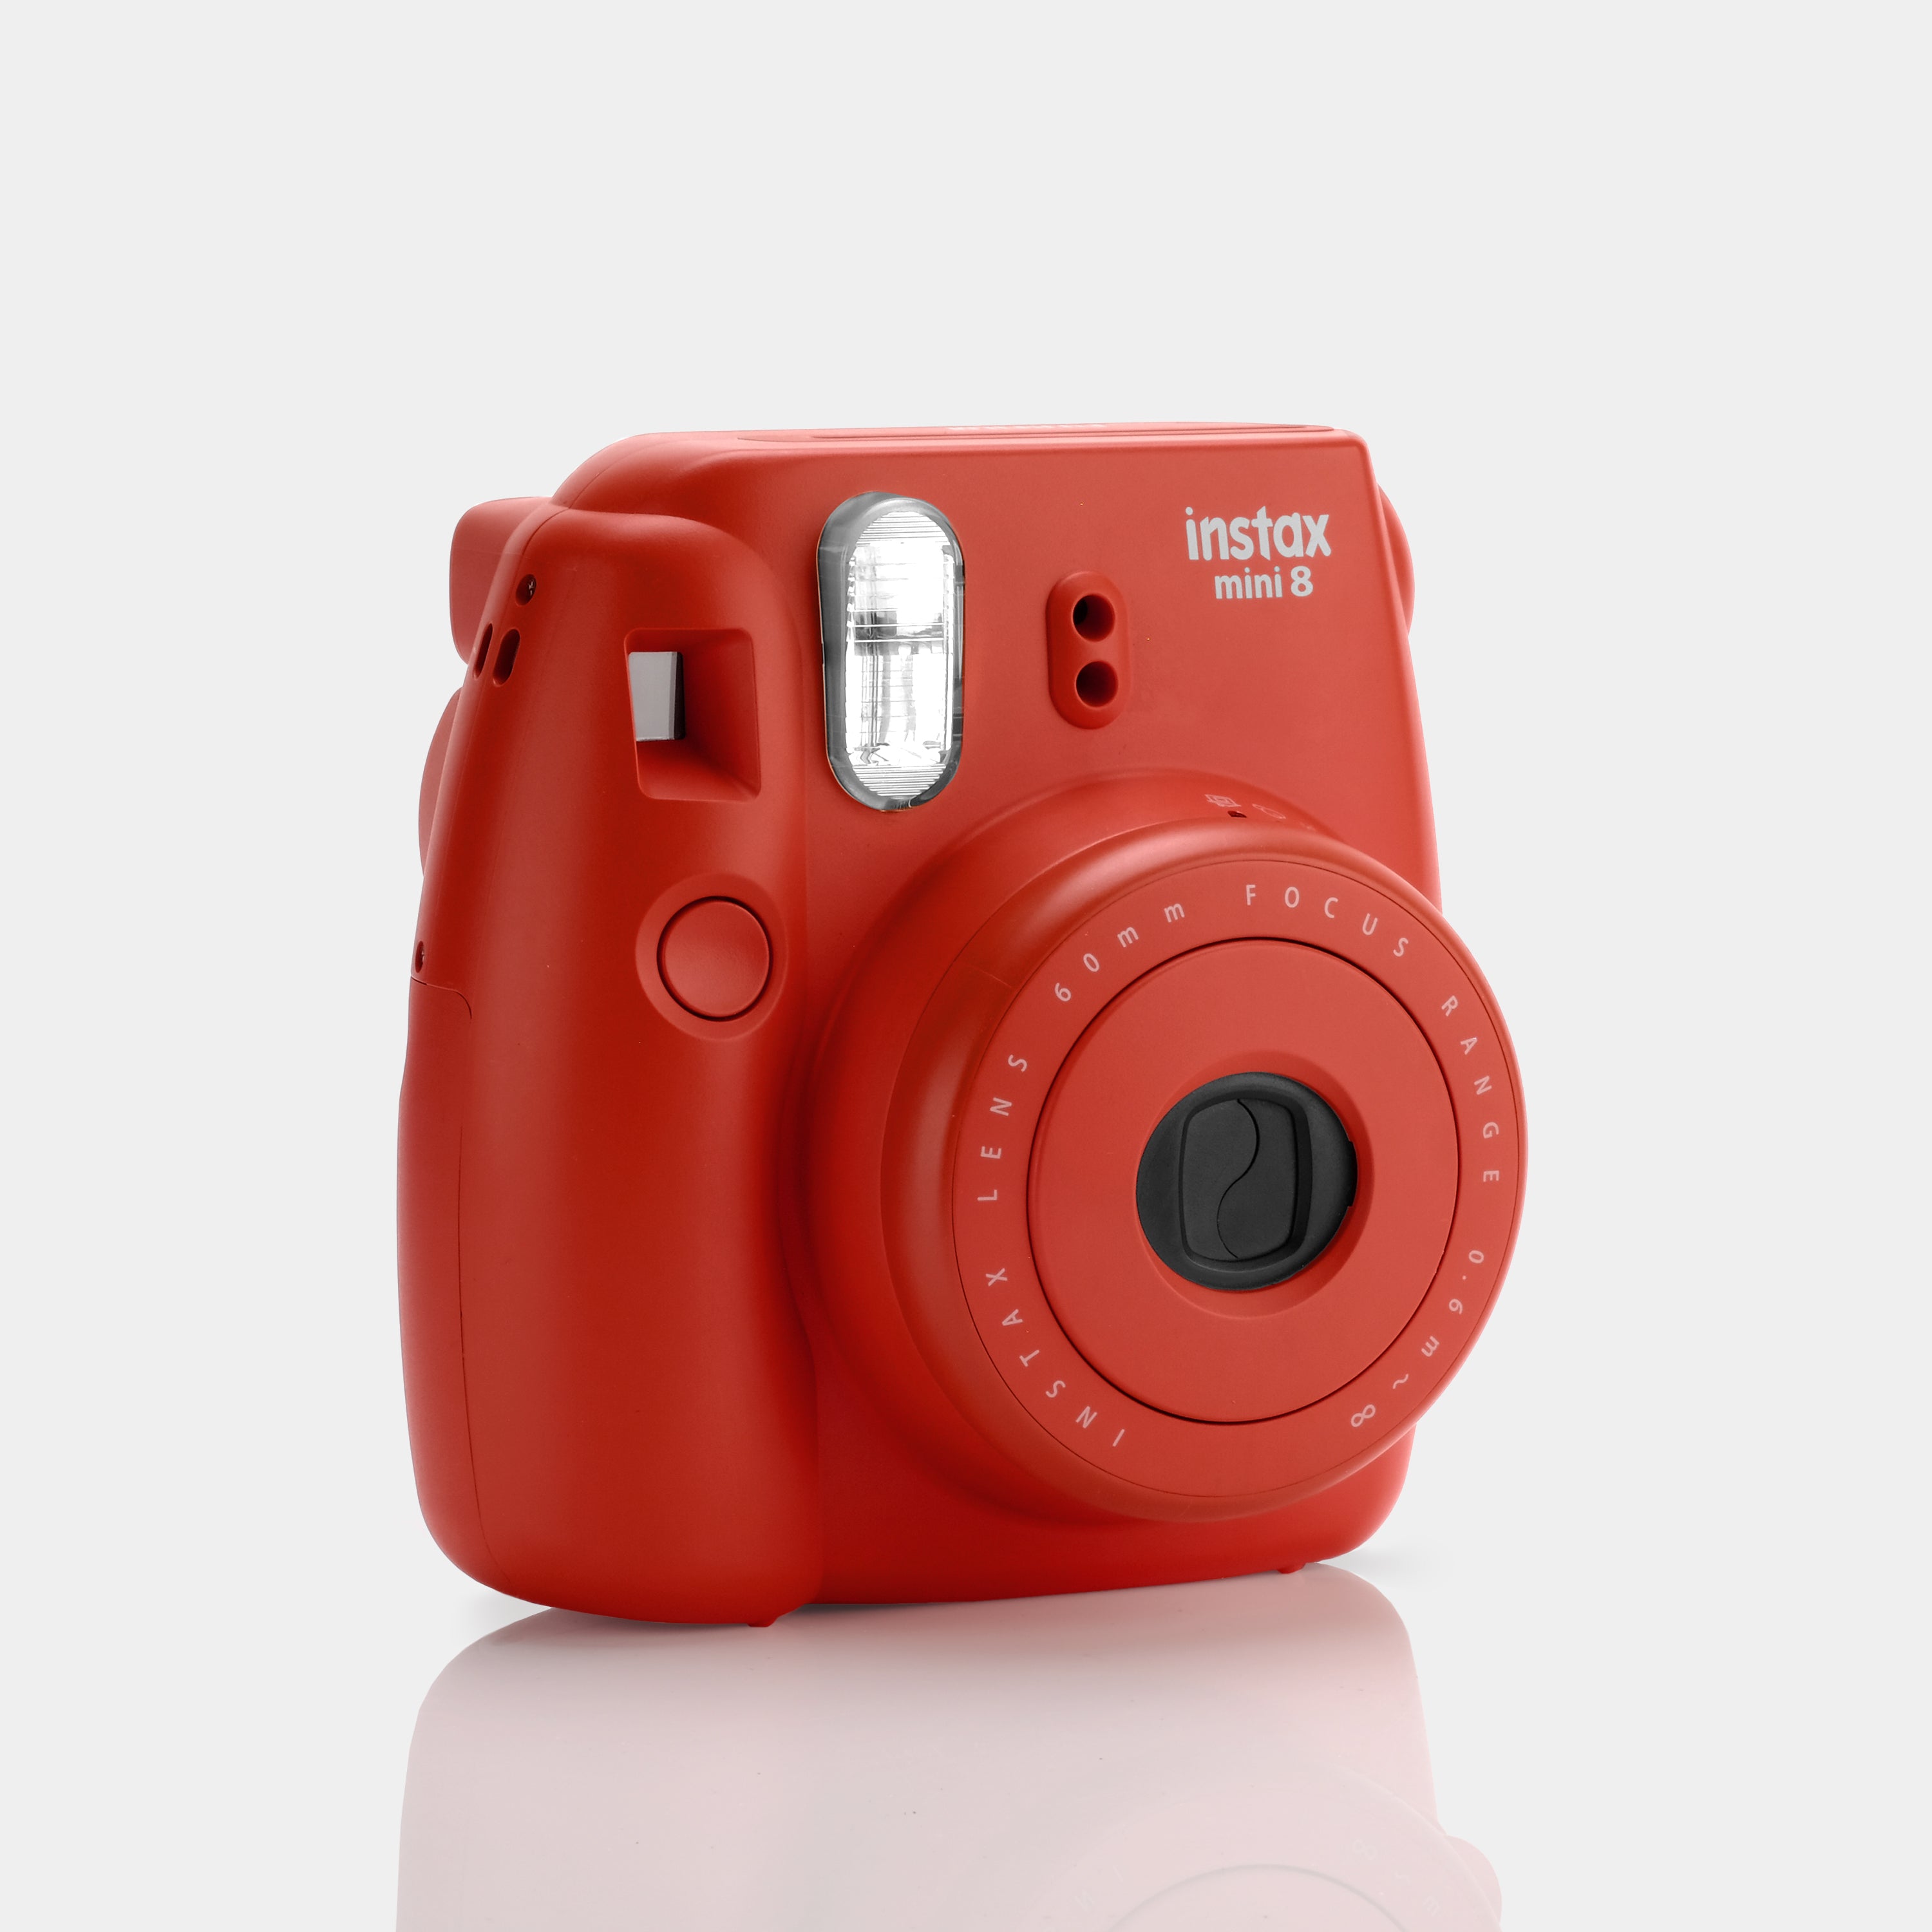 Fujifilm Instax Mini 8 Red Instant Film Camera - Refurbished